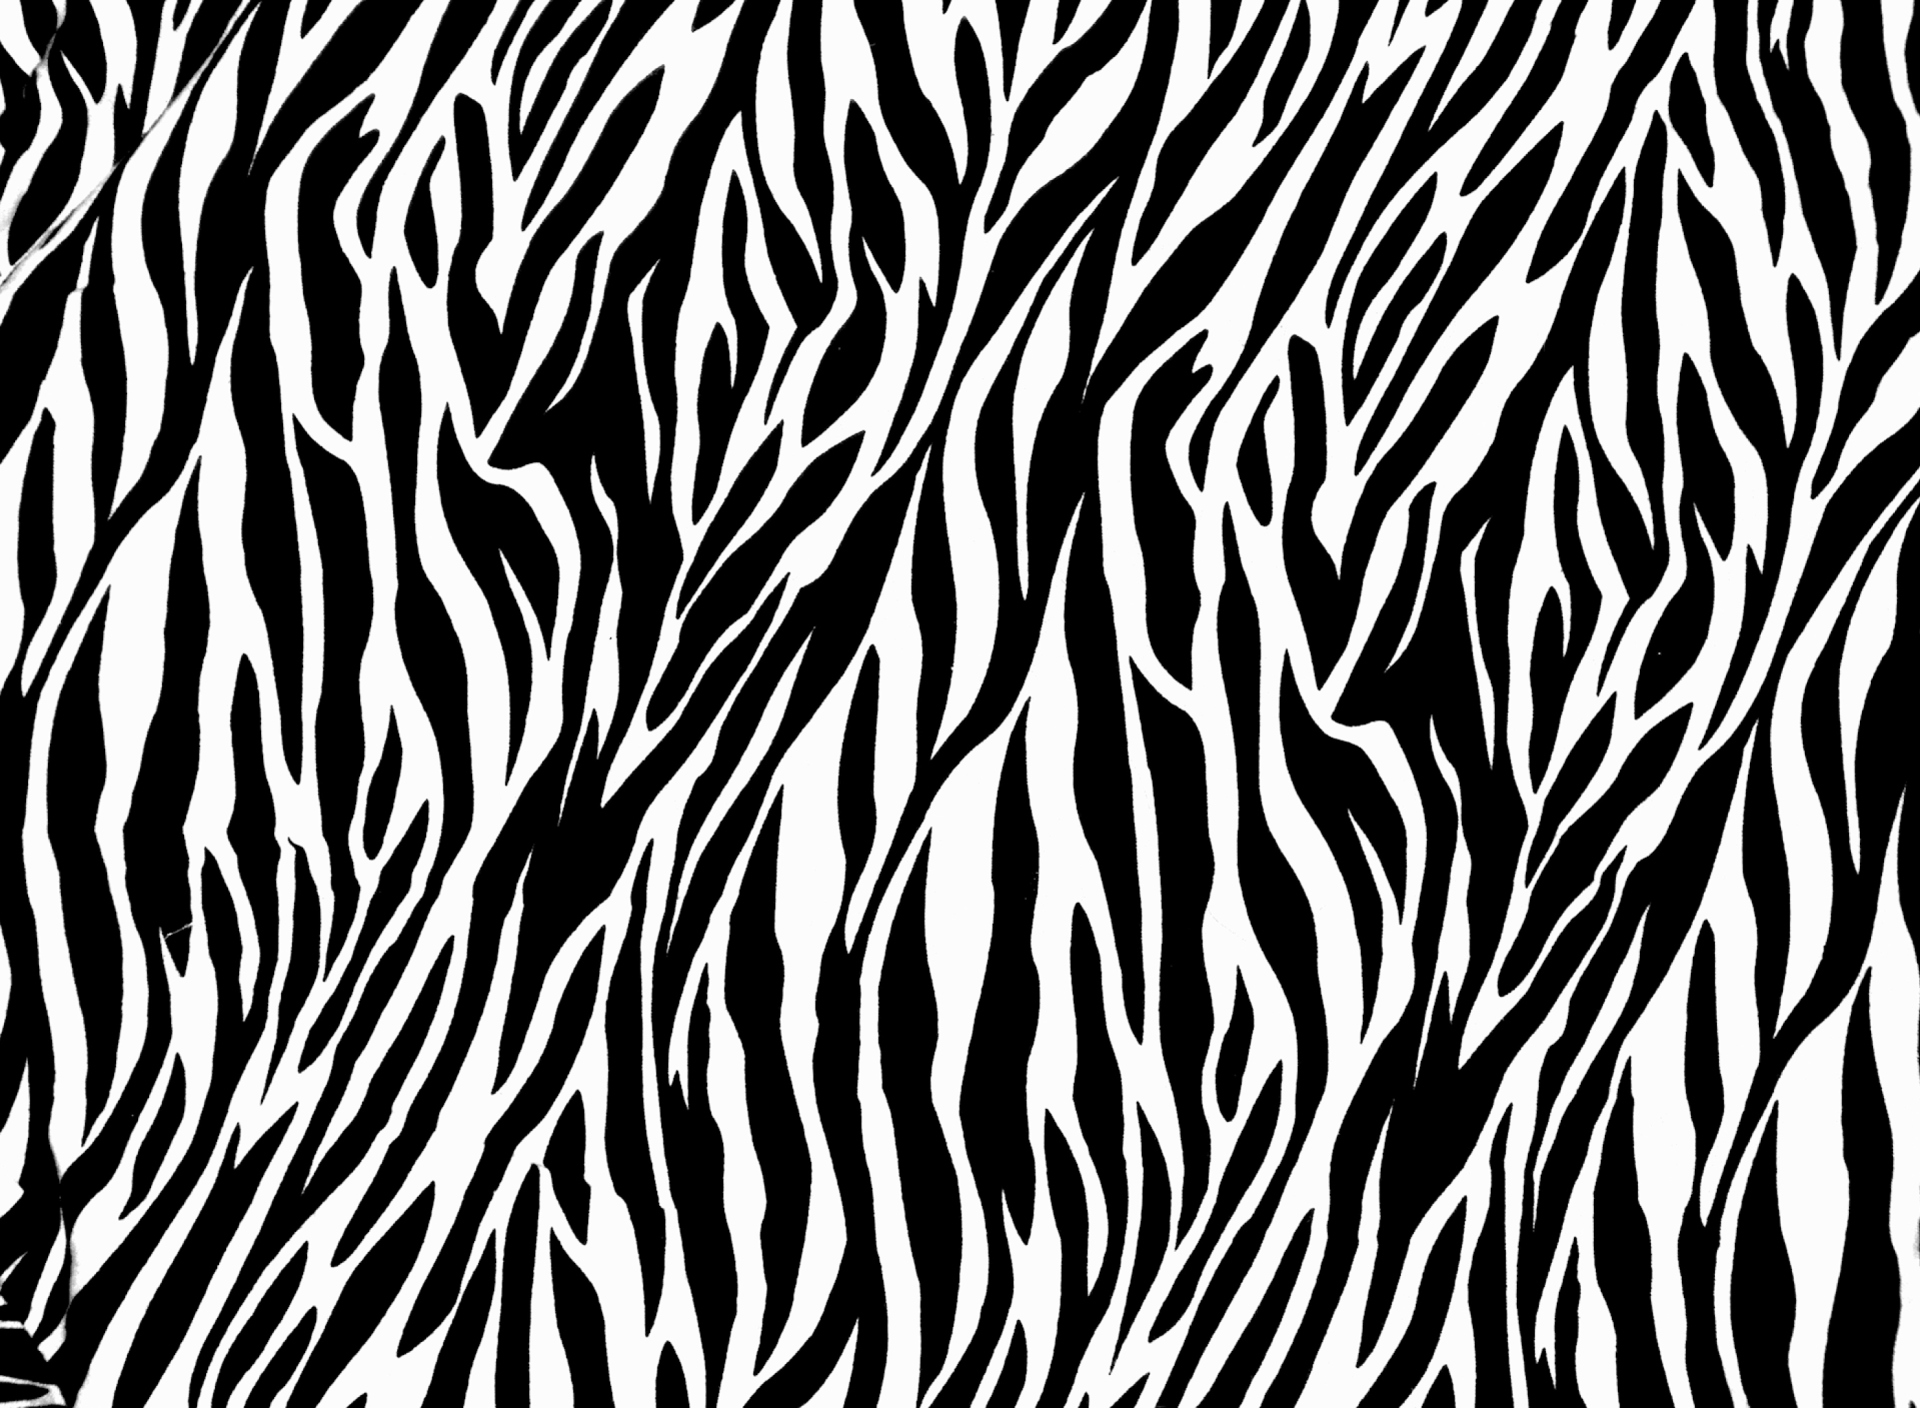 Zebra Print Wallpaper HD Free Download.